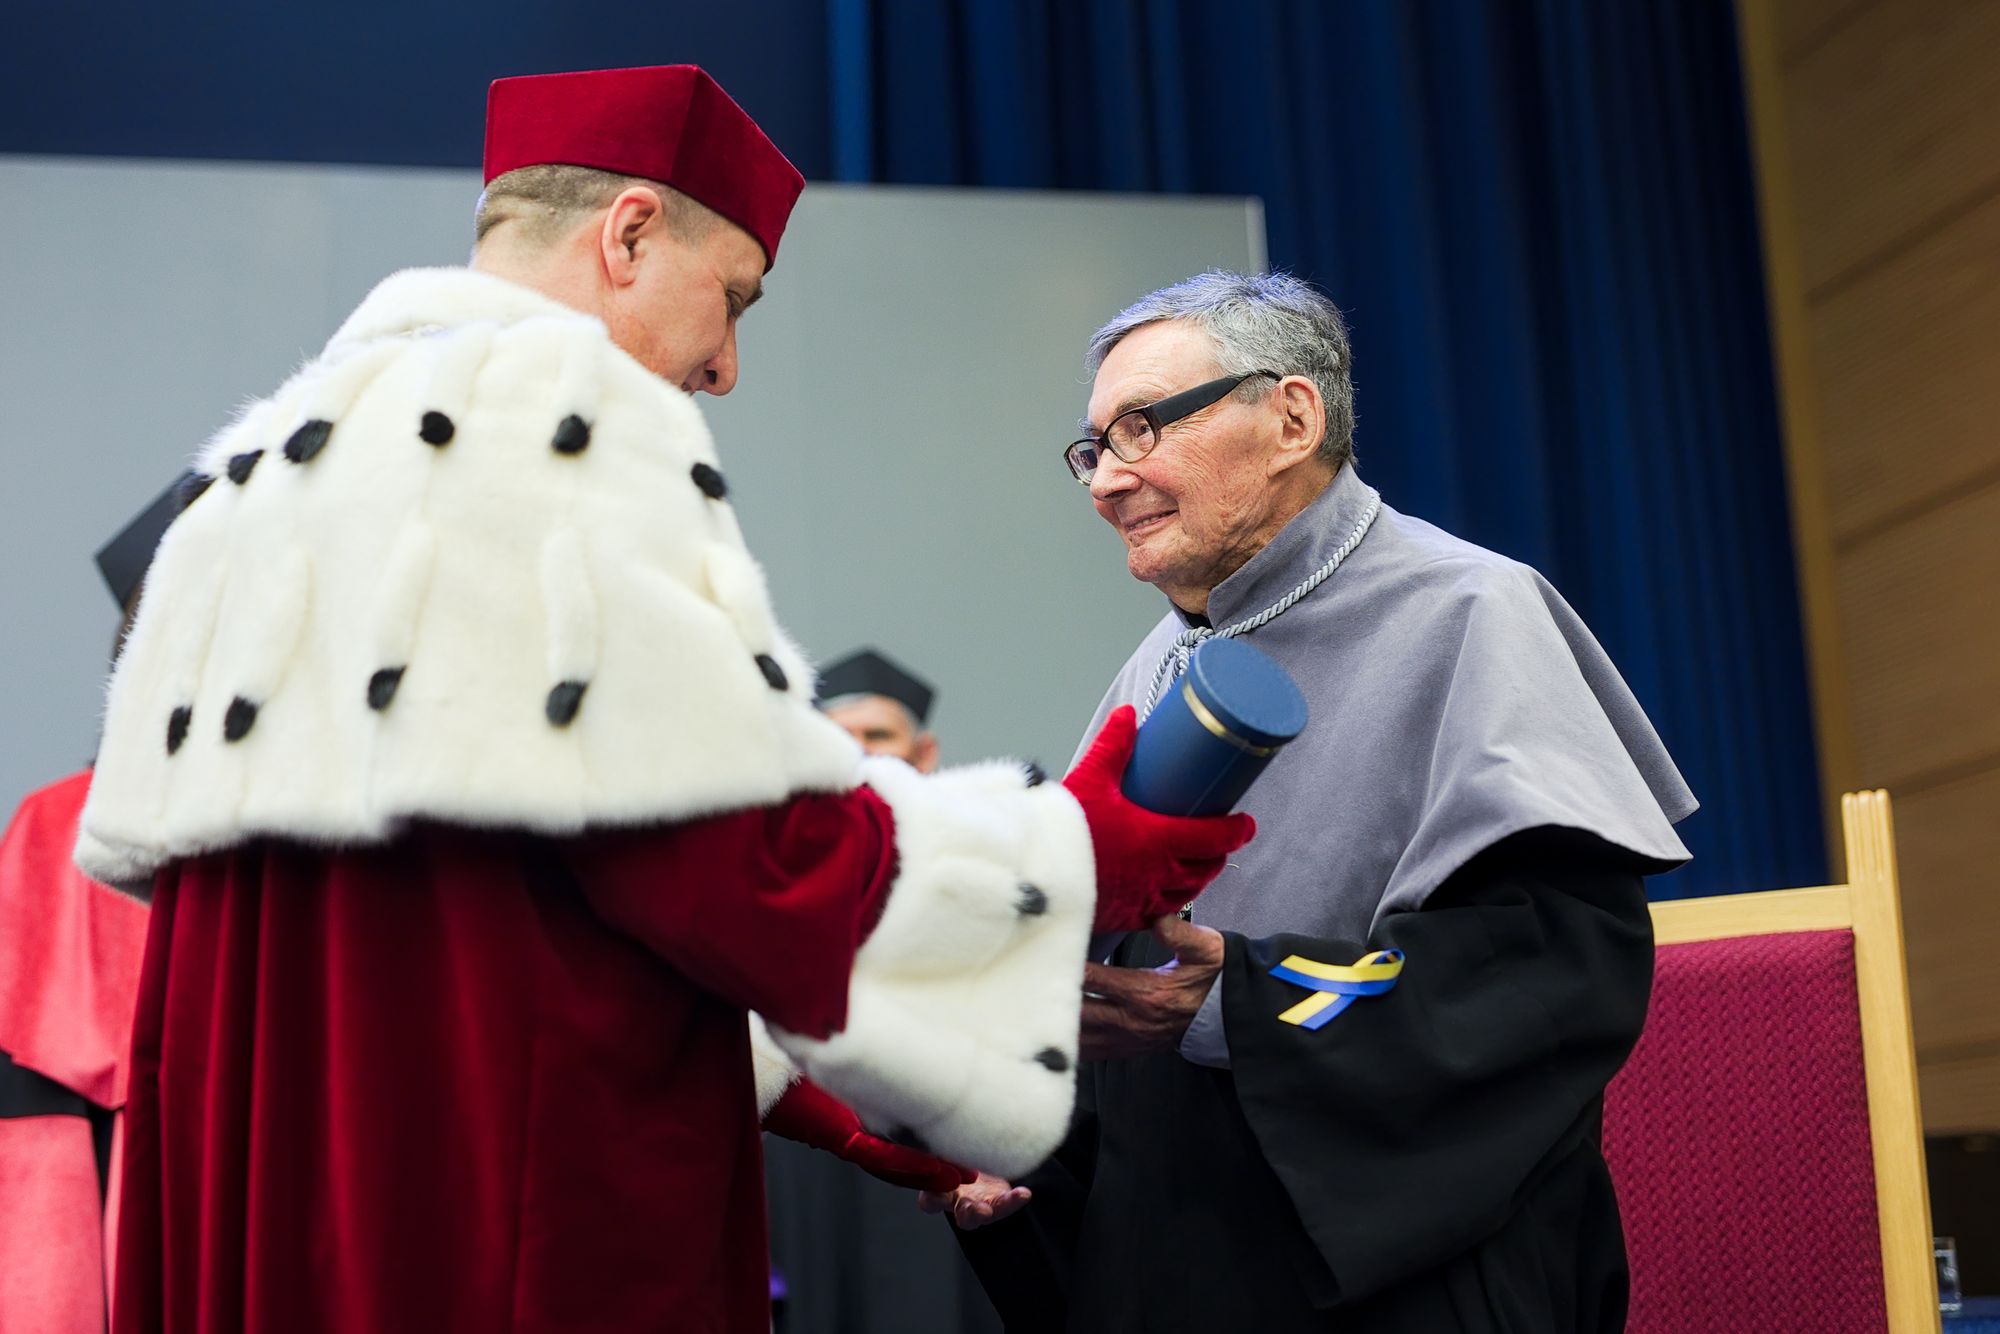 Marian Turski odbiera z rąk rektora UMCS tytuł honoris causa. Rektor nosi czerwoną czapkę i togę, a na plecach ma białe futerko. Marian Turski ma czarną szatę i szarą pelerynkę.